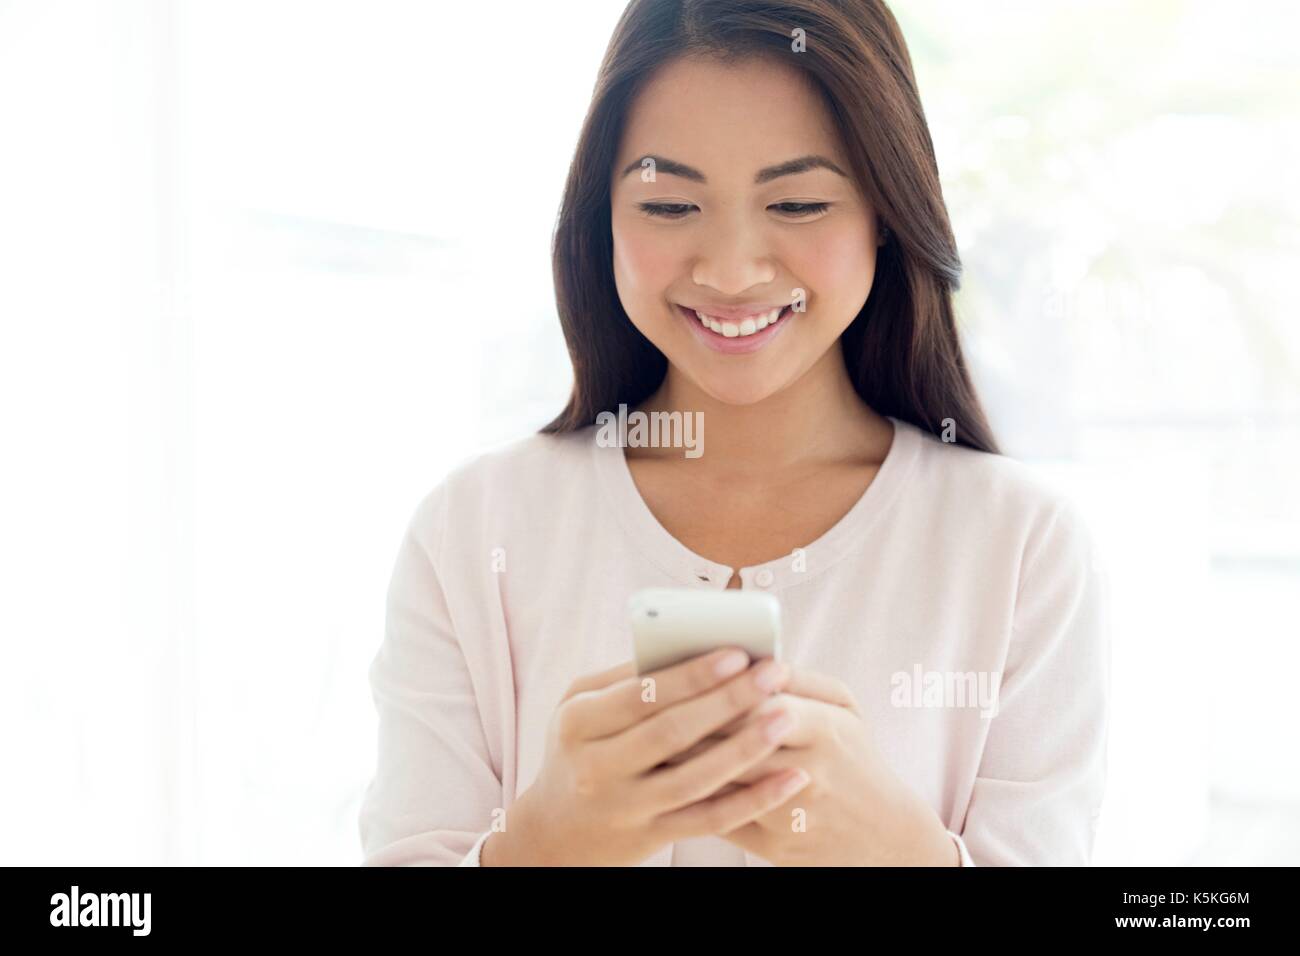 Junge Frau mit Smartphone, lächelnd. Stockfoto